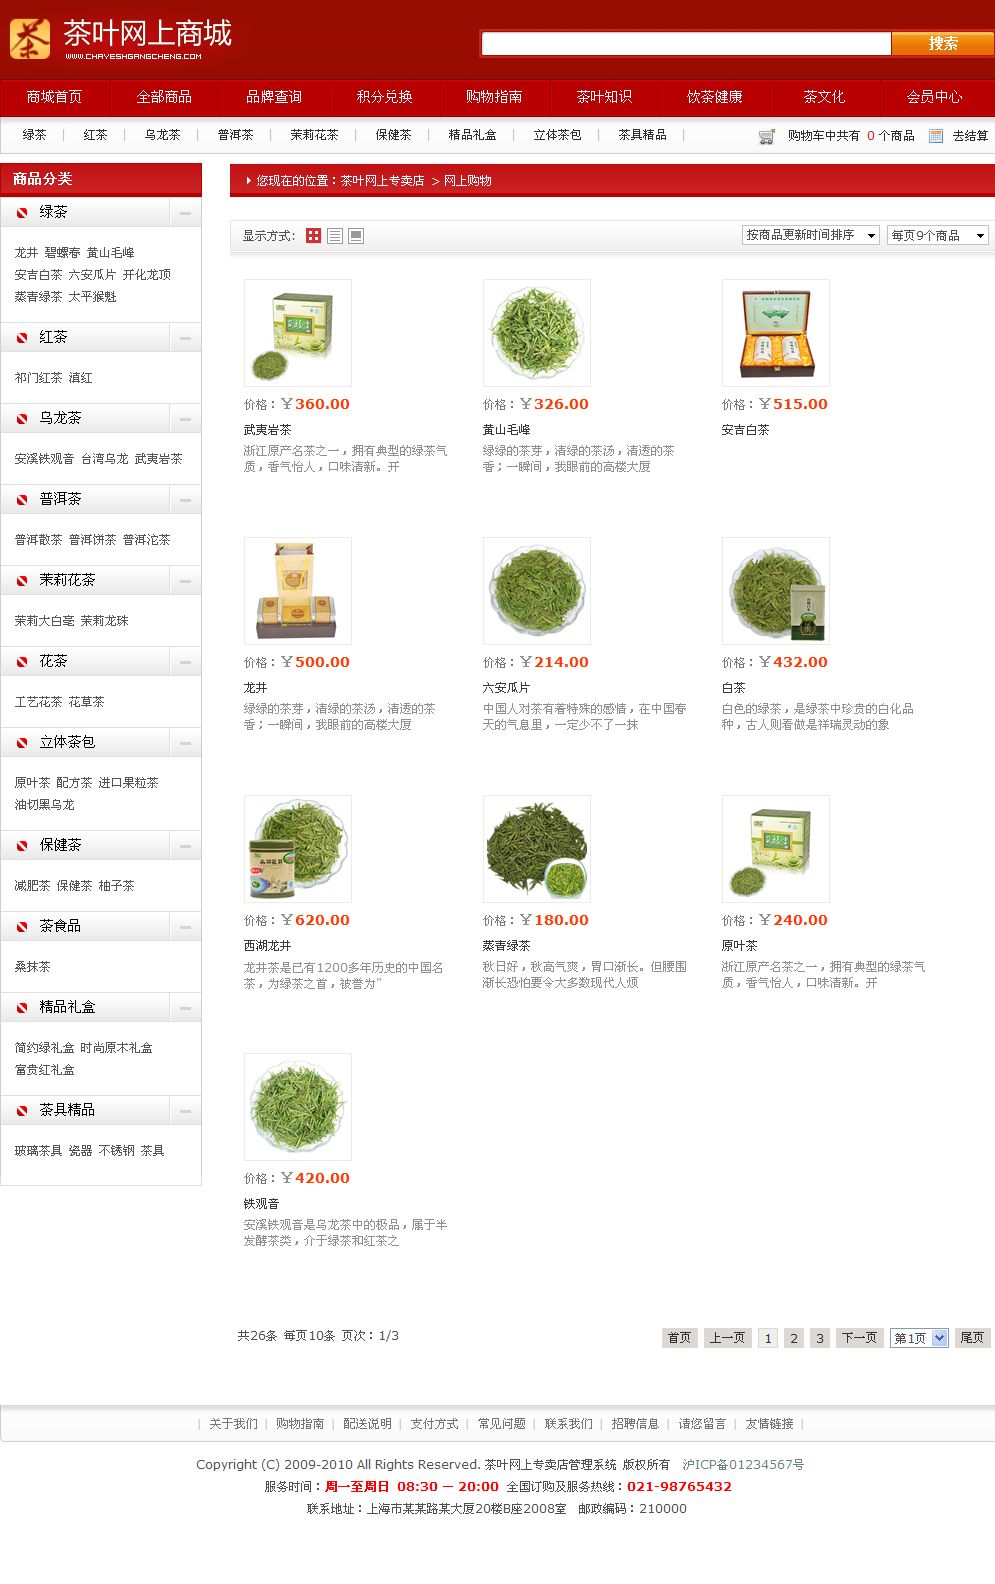 茶叶网上商城产品列表页